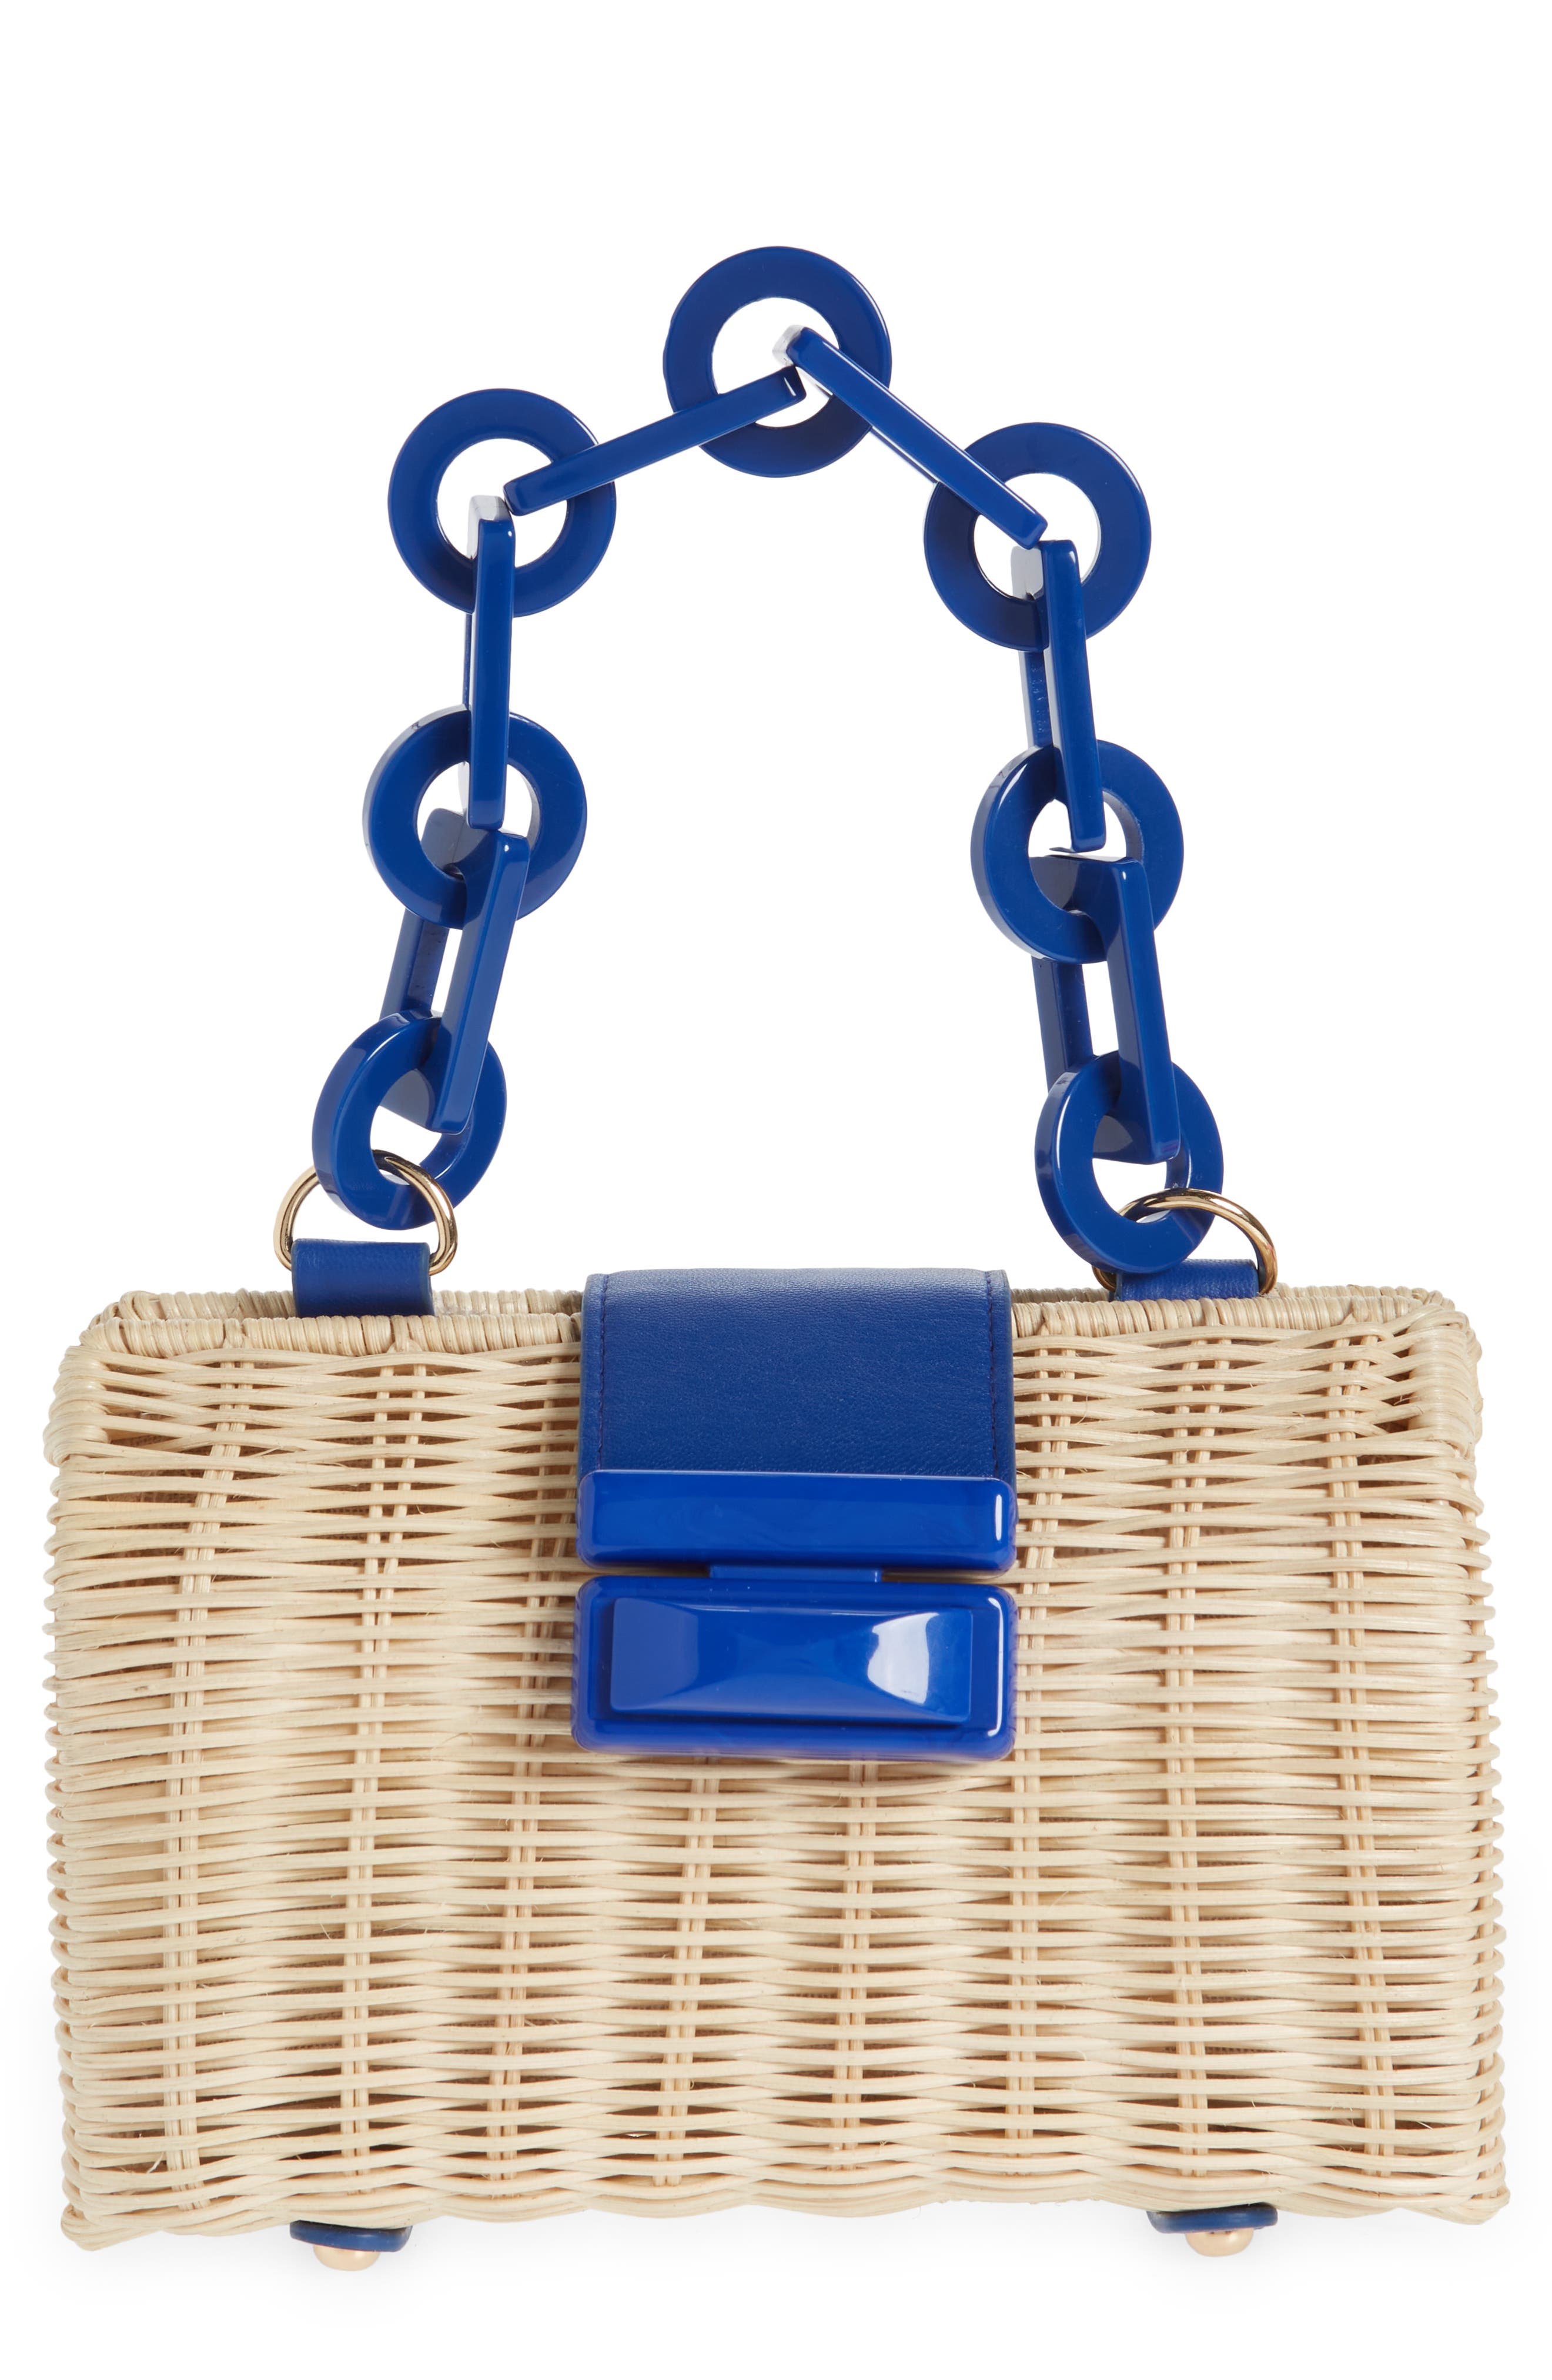 Purse/ Rattan and Wood Top Handle Bag/Vintage Cherry Straw Handbag